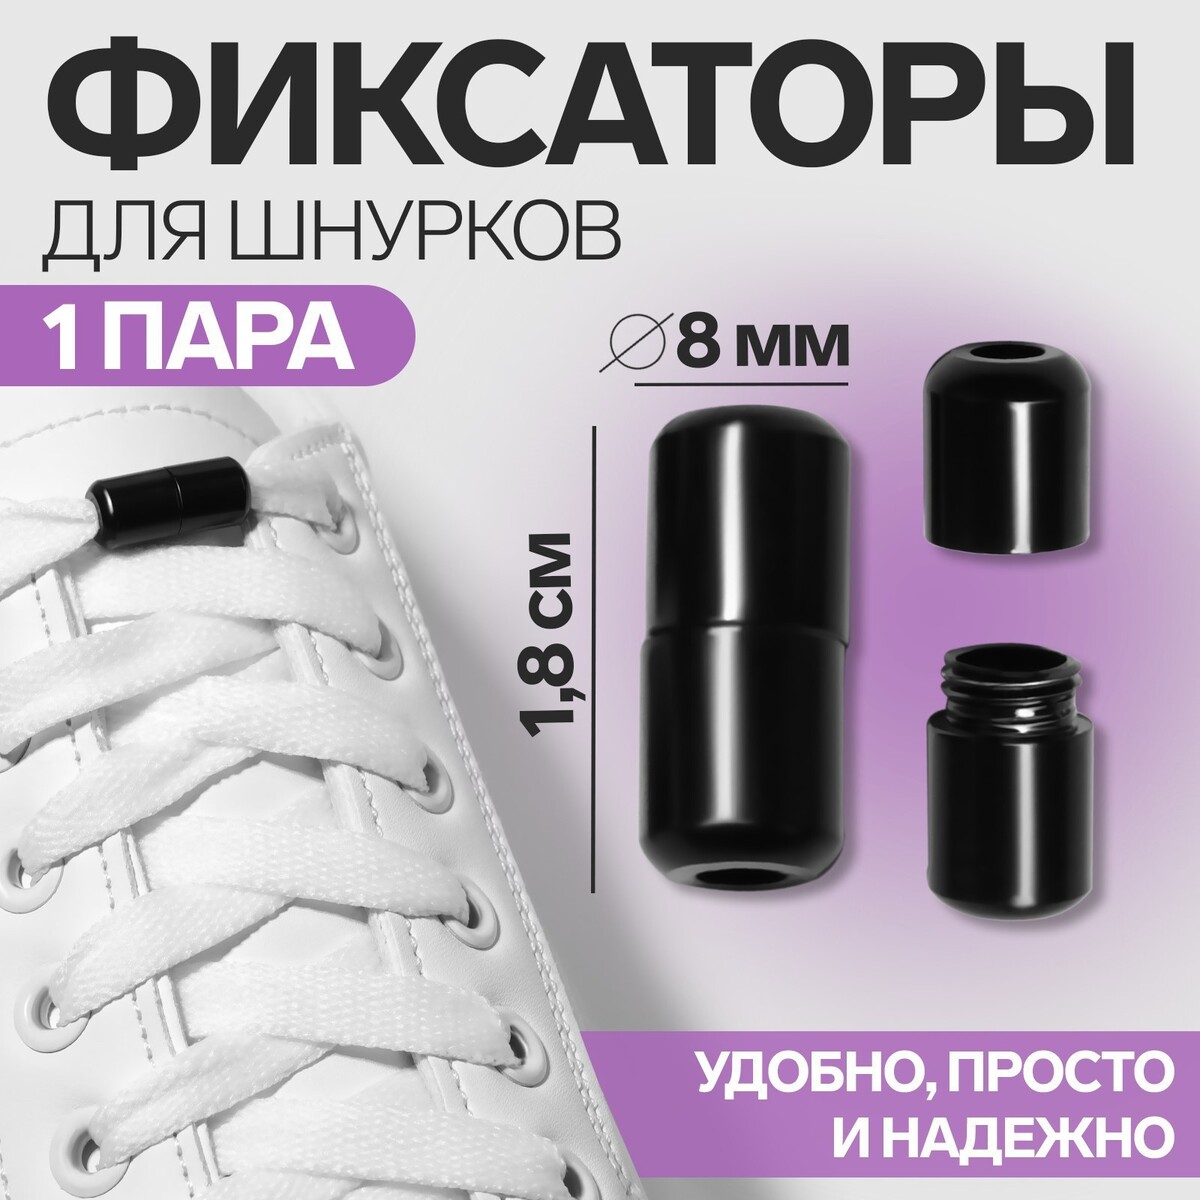 Фиксатор для шнурков, пара, d = 8 мм, 1,8 см, цвет черный фиксатор для шнурков пара d 8 мм 1 8 см серебристый